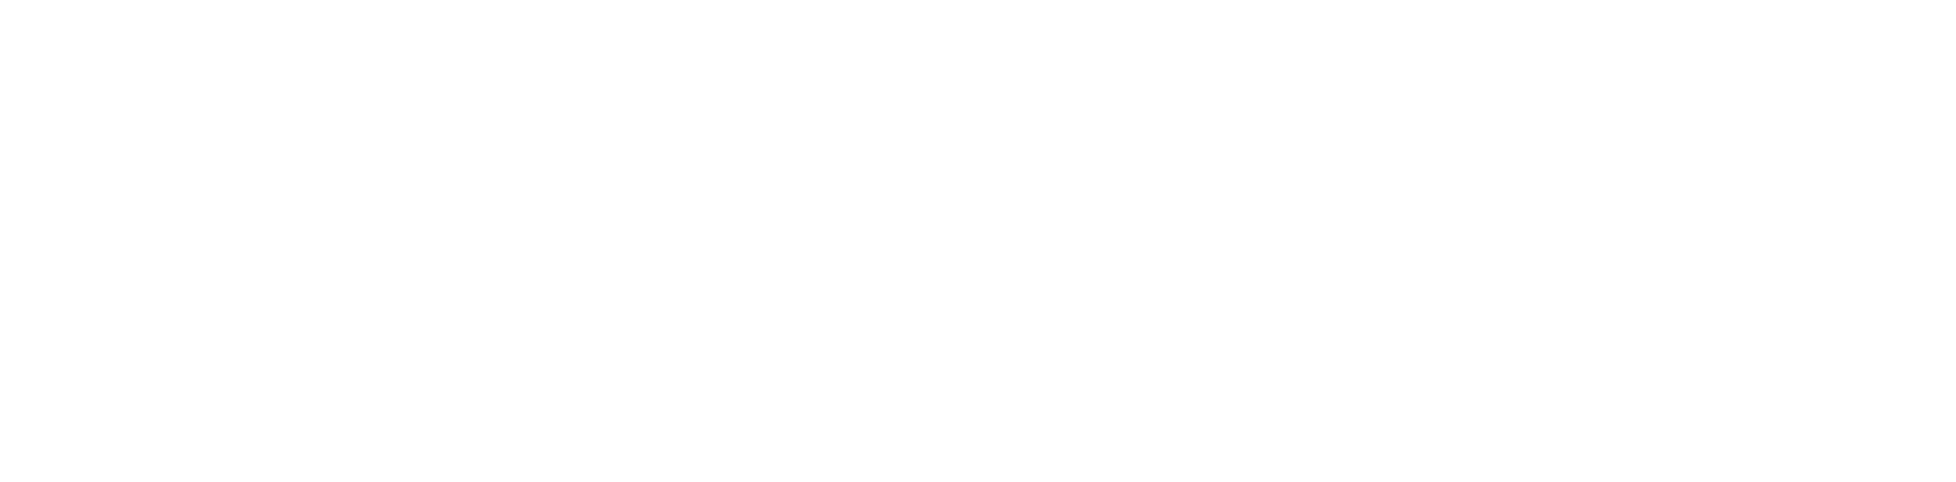 Elena Aldea